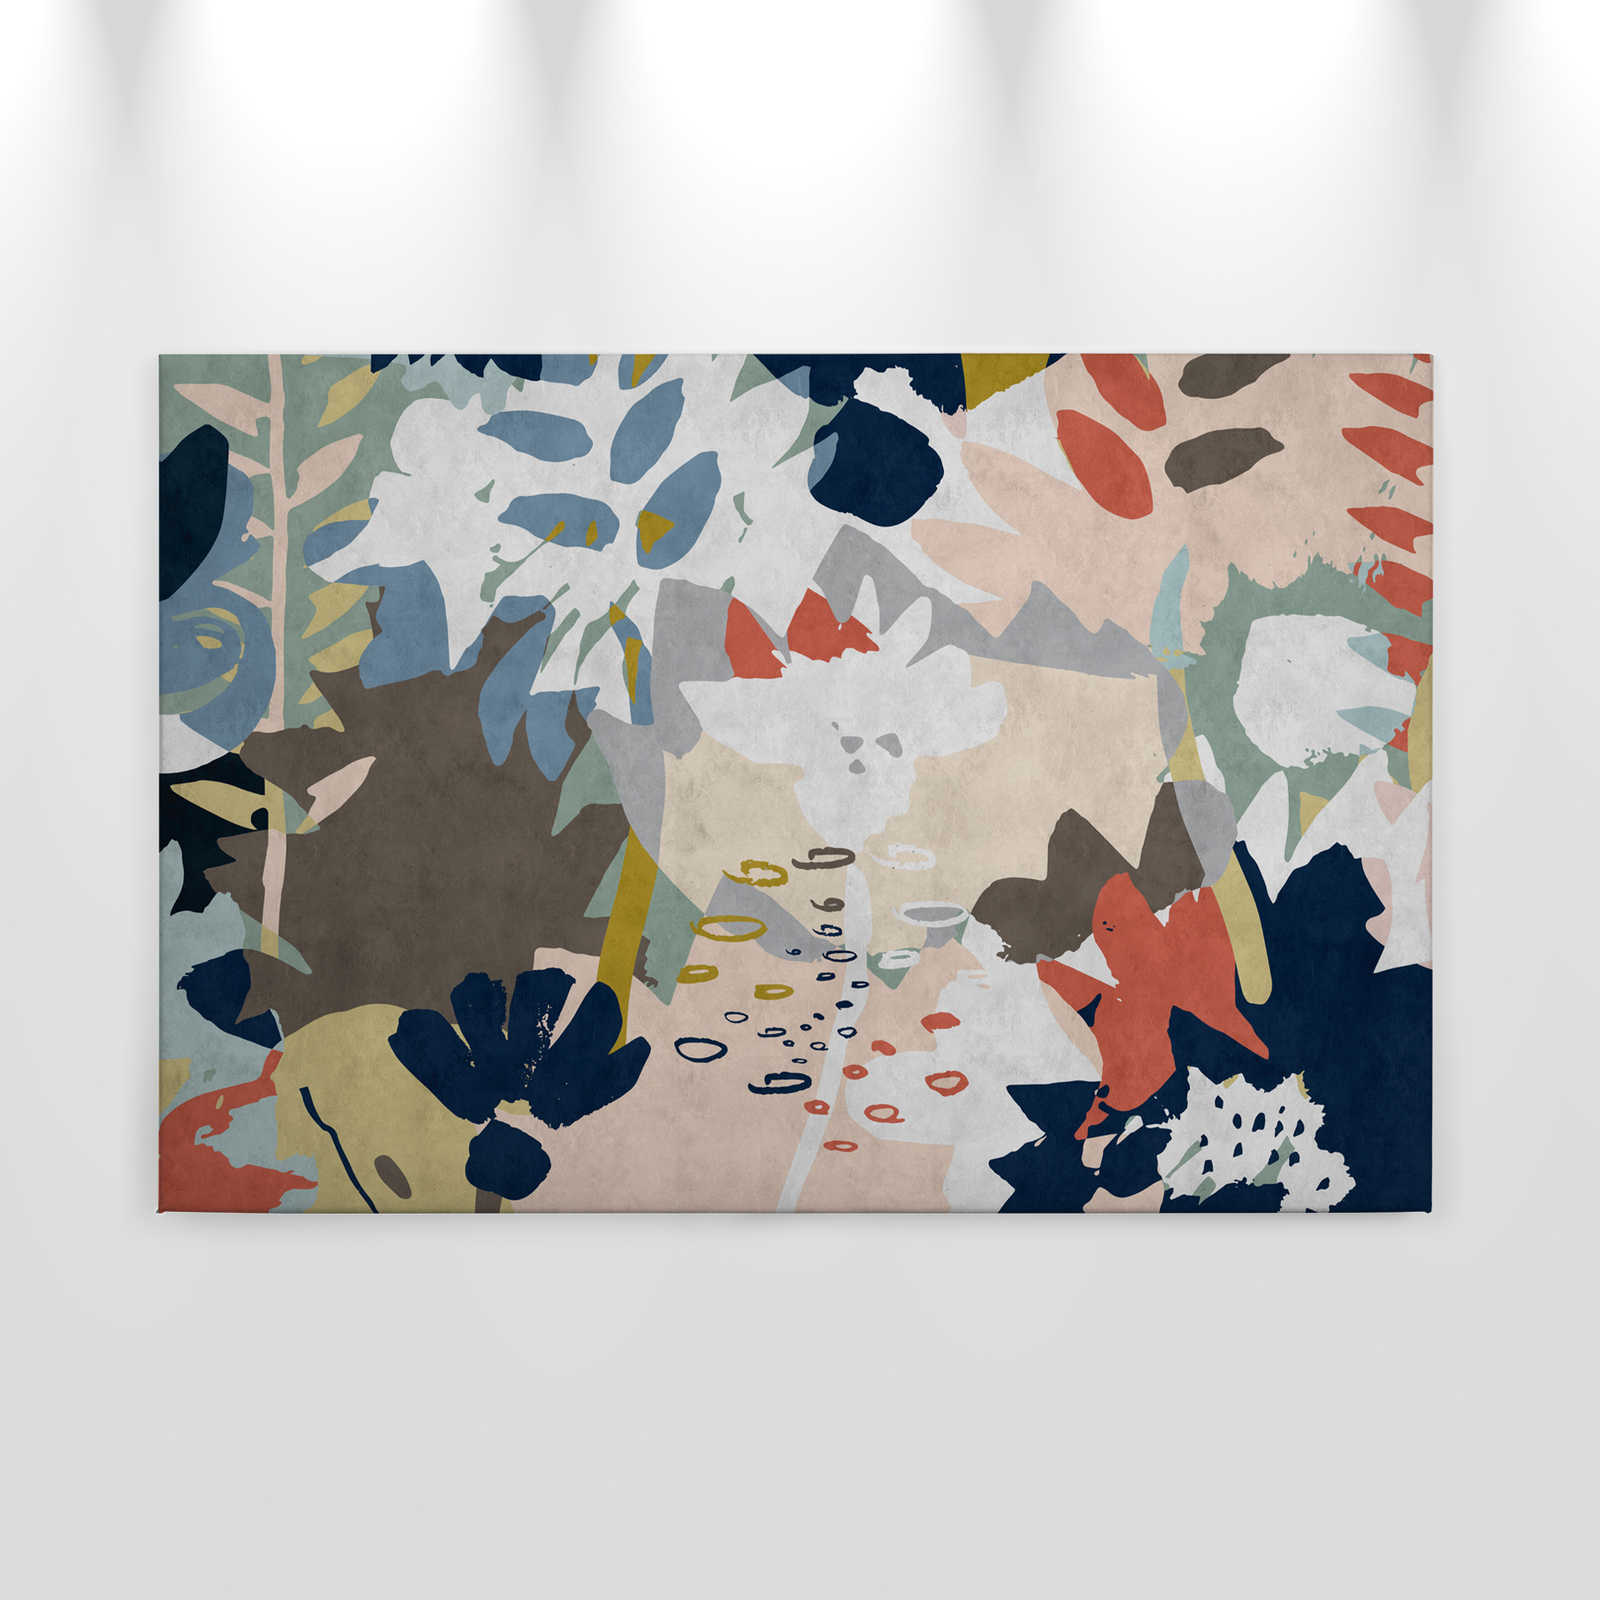             Collage floreale 4 - Quadro su tela con motivo di foglie colorate - struttura in carta assorbente - 0,90 m x 0,60 m
        